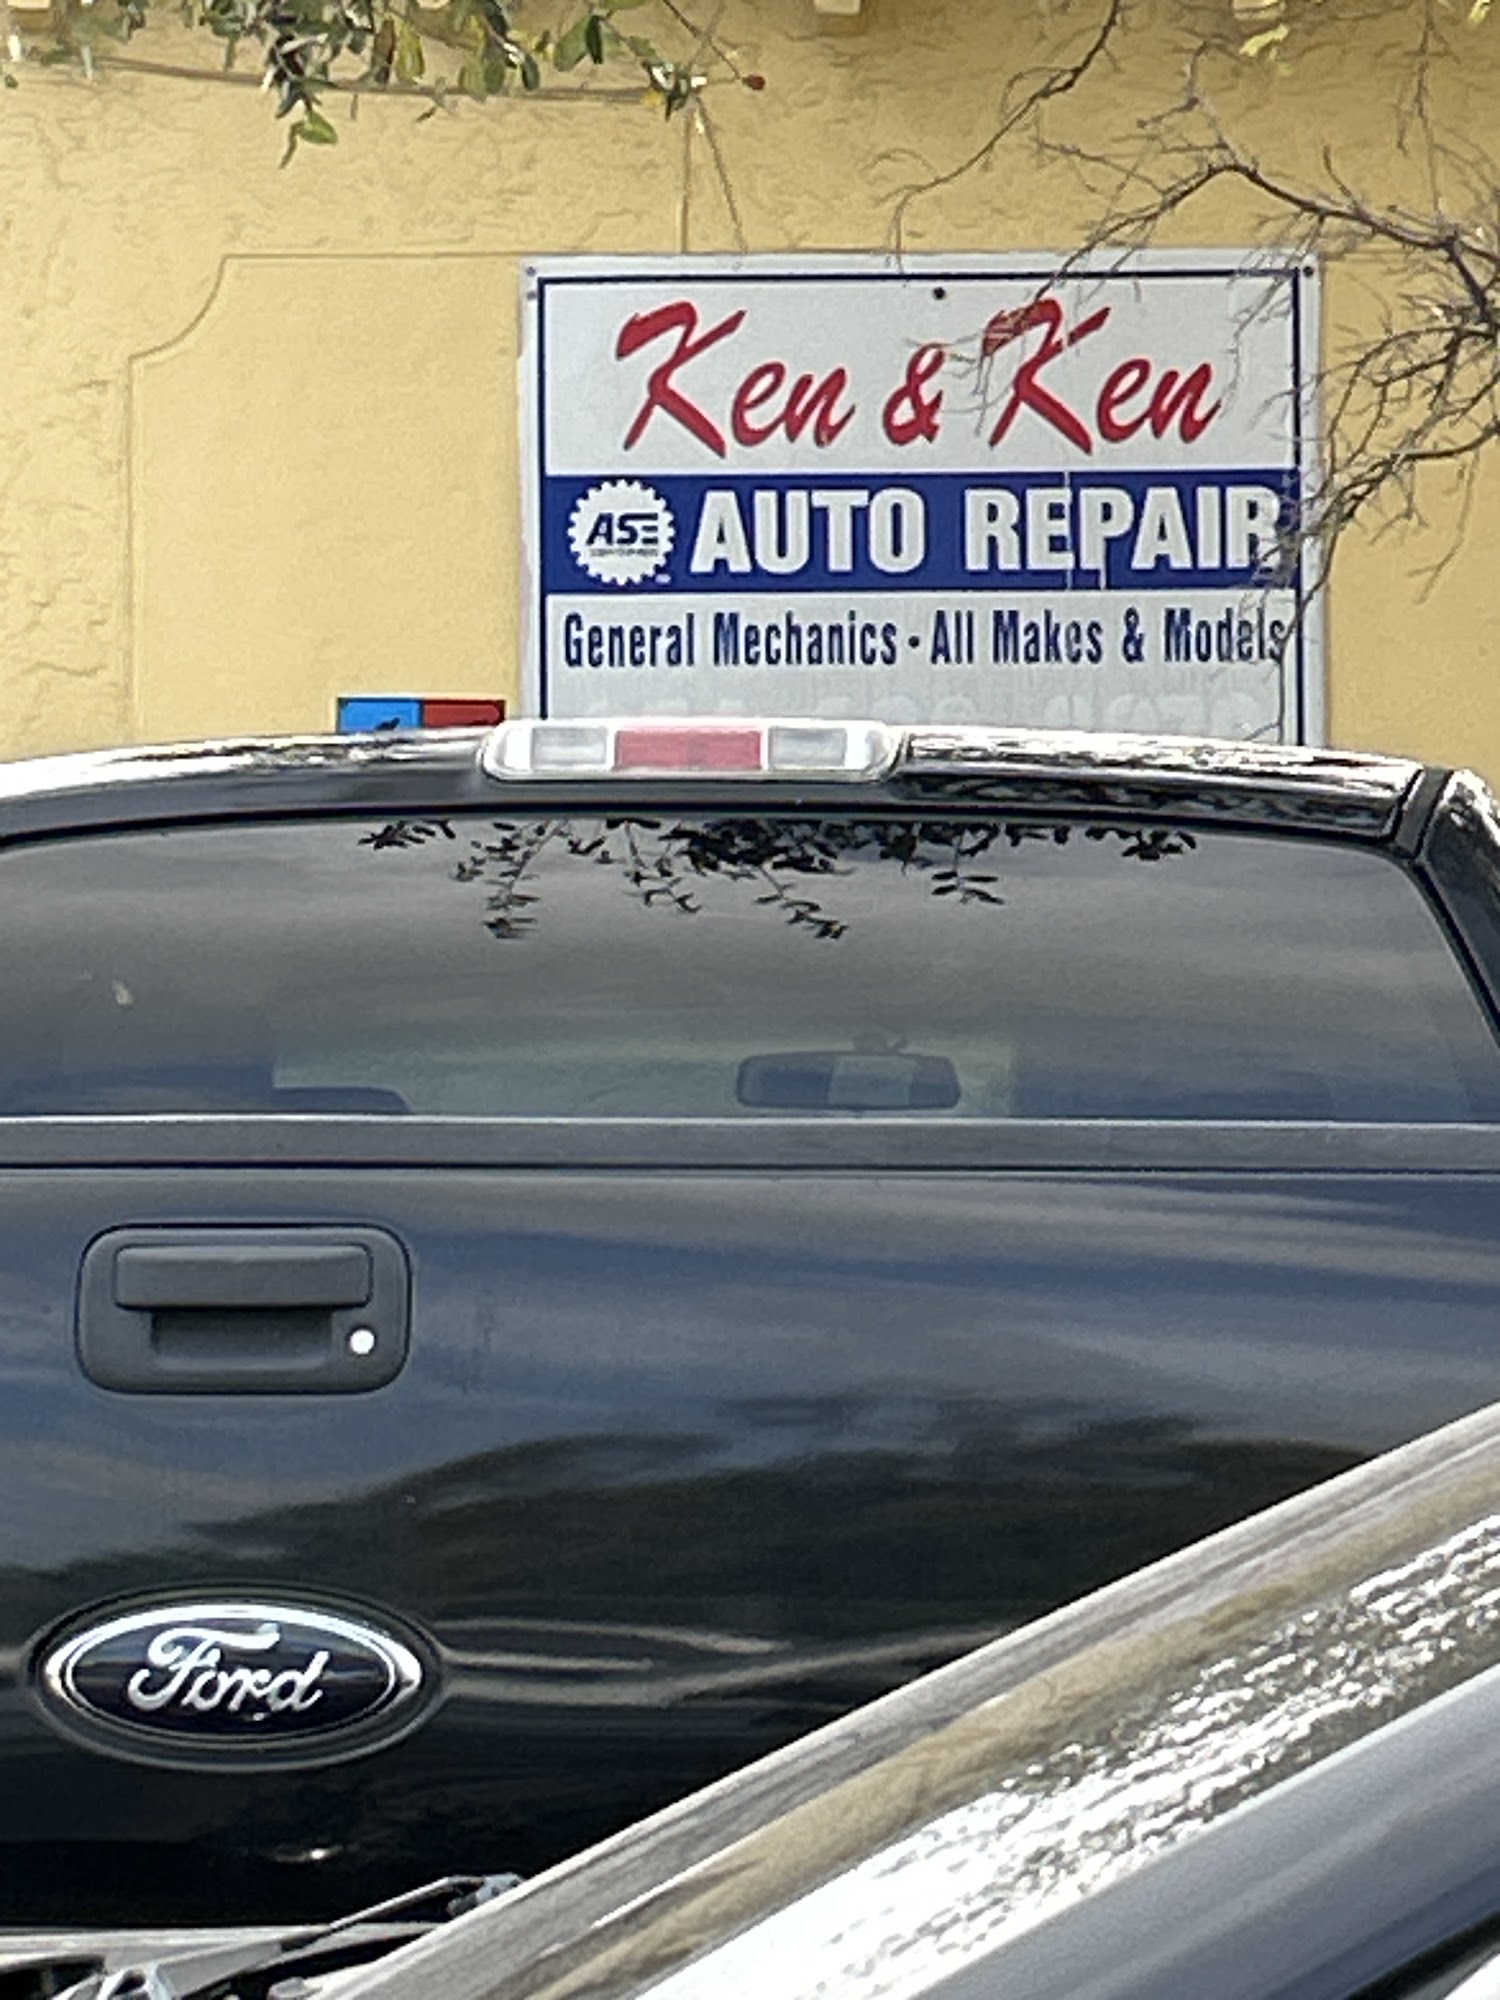 Ken & Ken Auto Repairs Inc